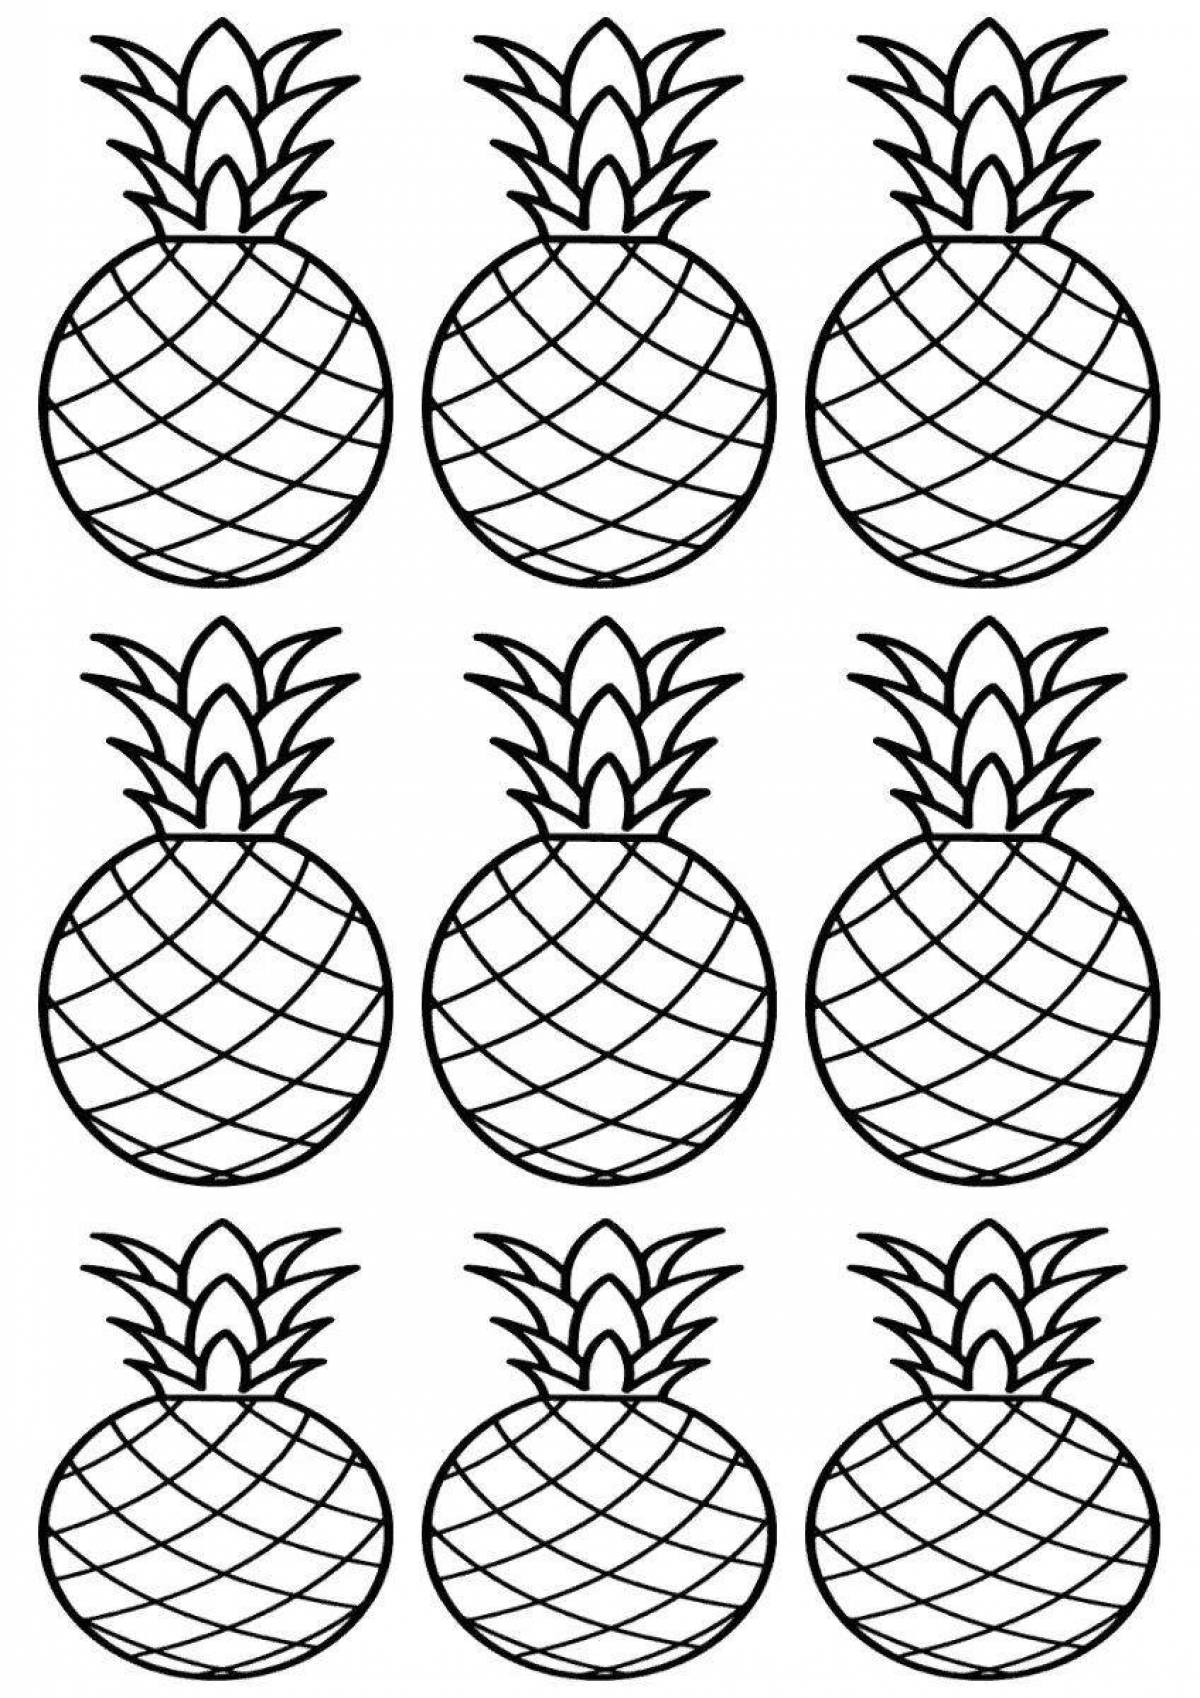 Раскраска ананас, шаблон ананаса для вырезания | Раскраски, Фрукты, Шаблоны